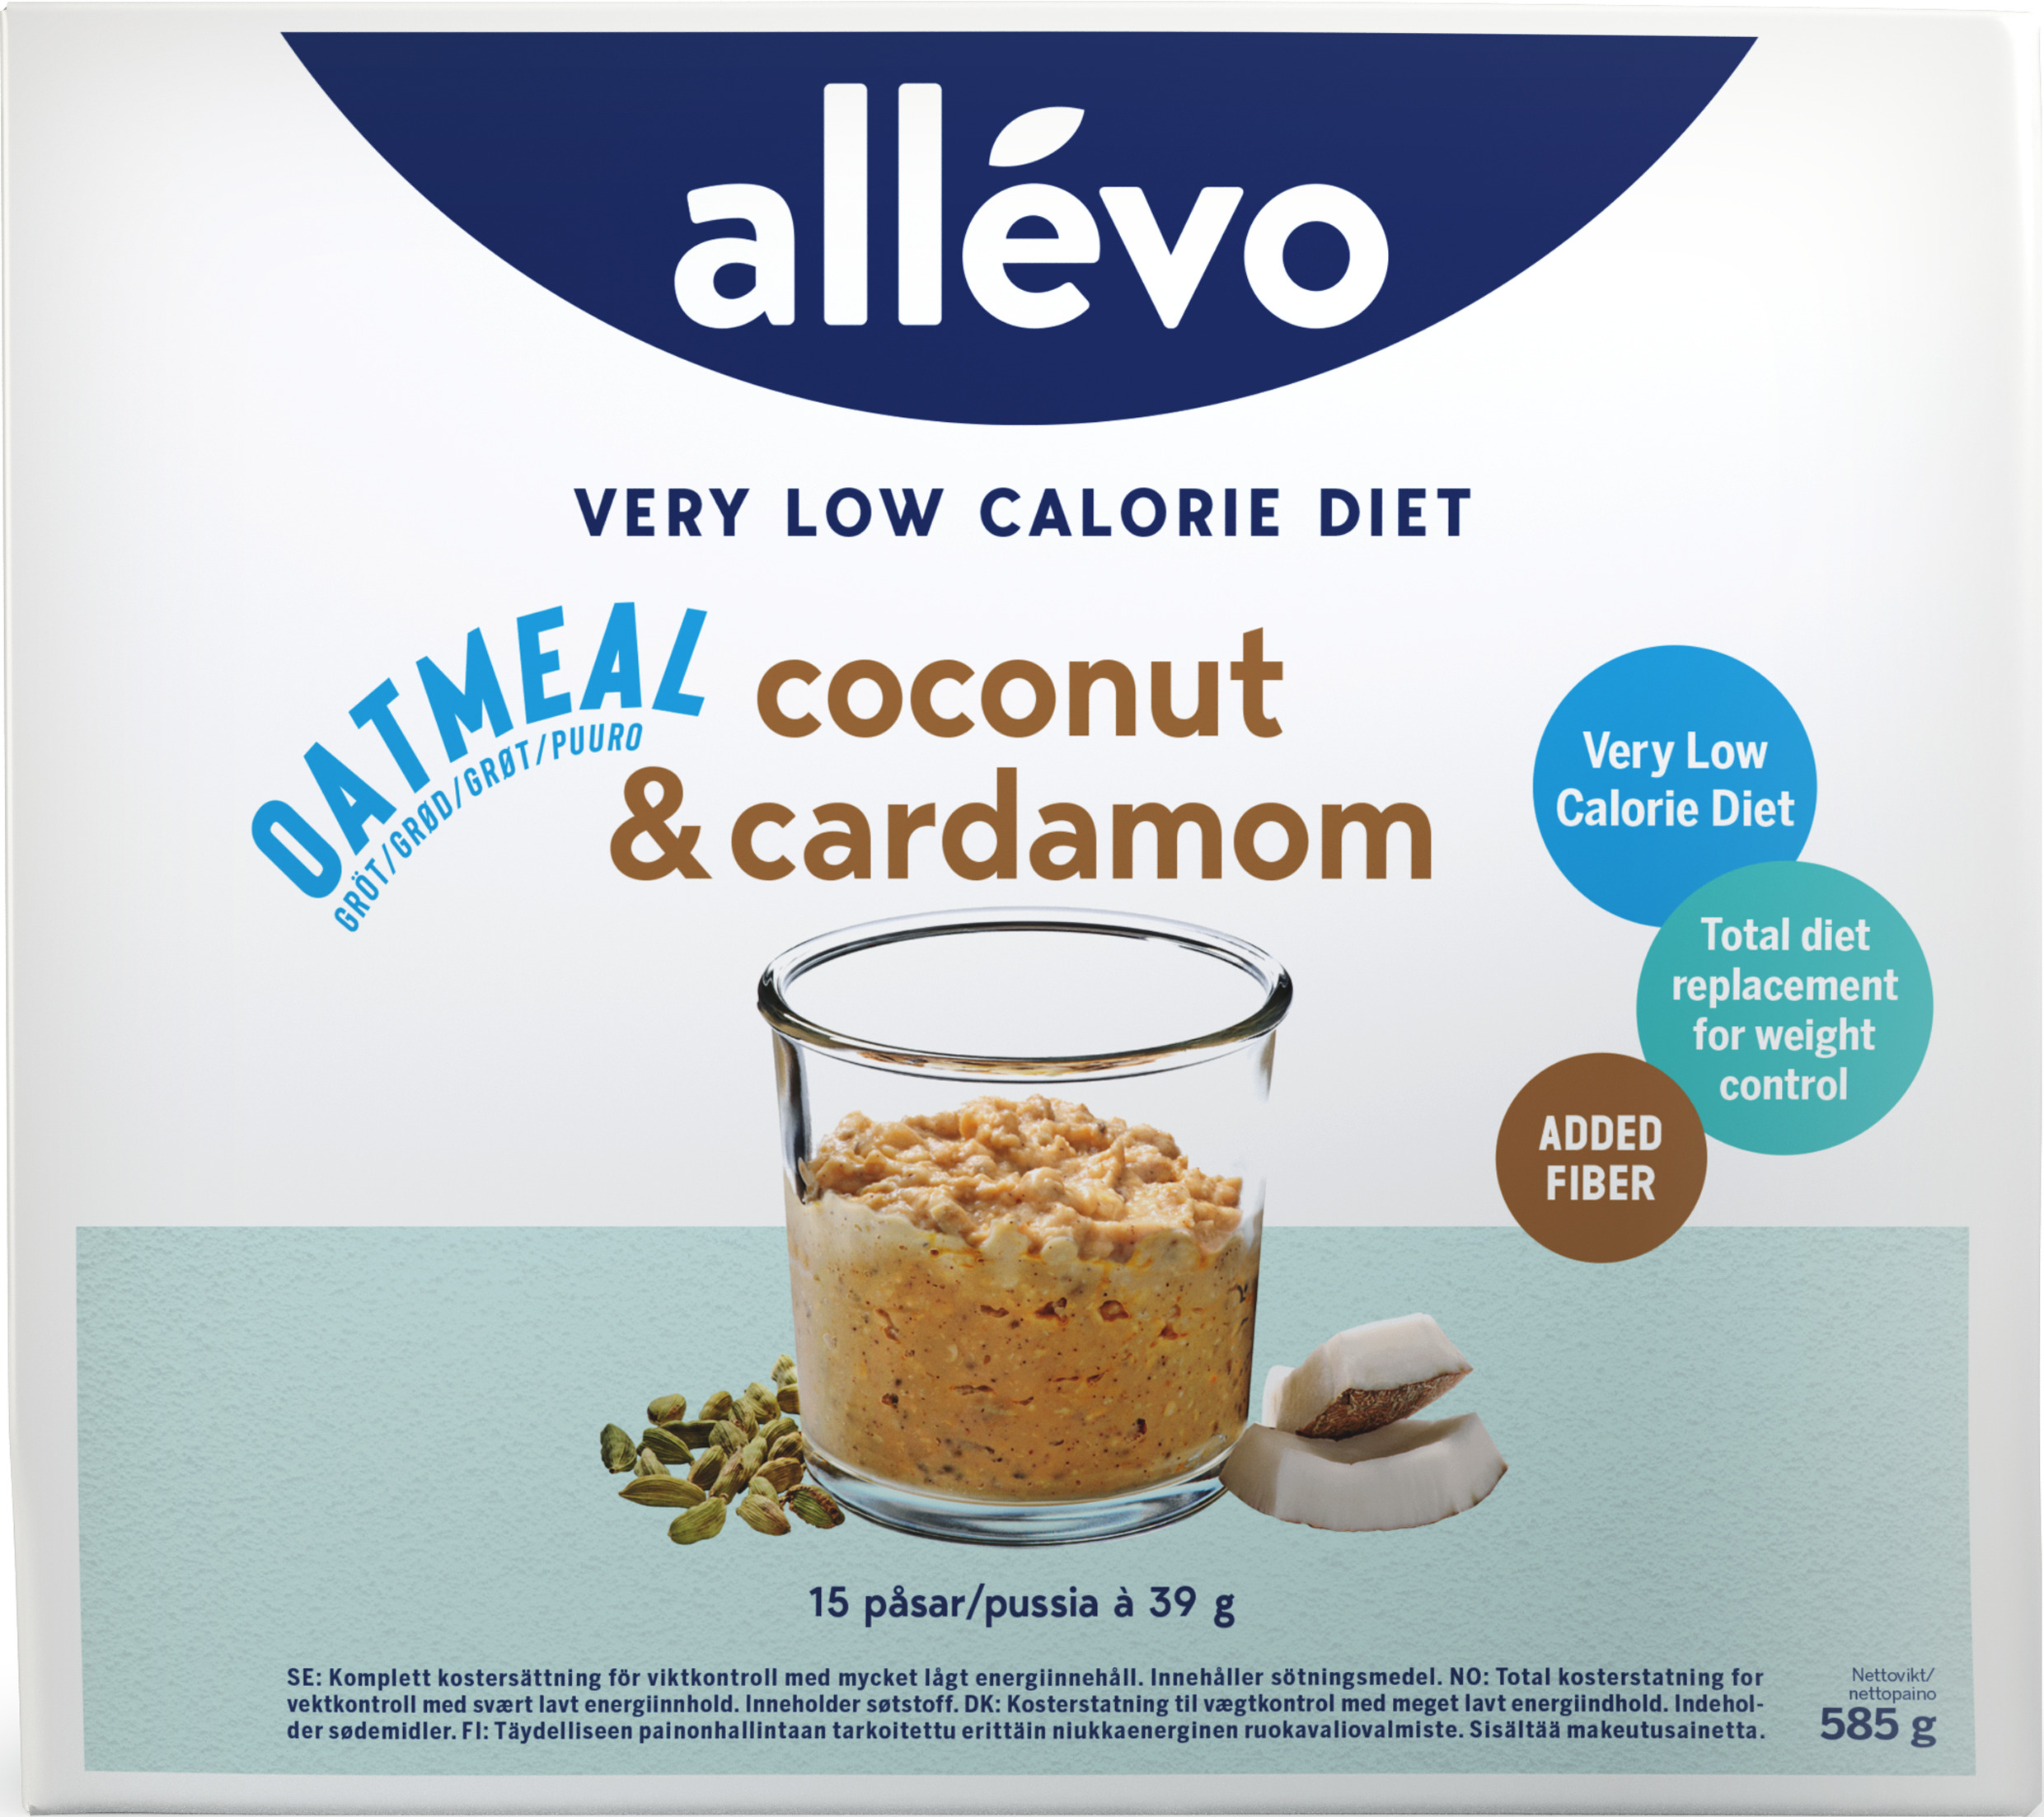 Allévo Oatmeal Coconut & Cardamom VLCD 15 st